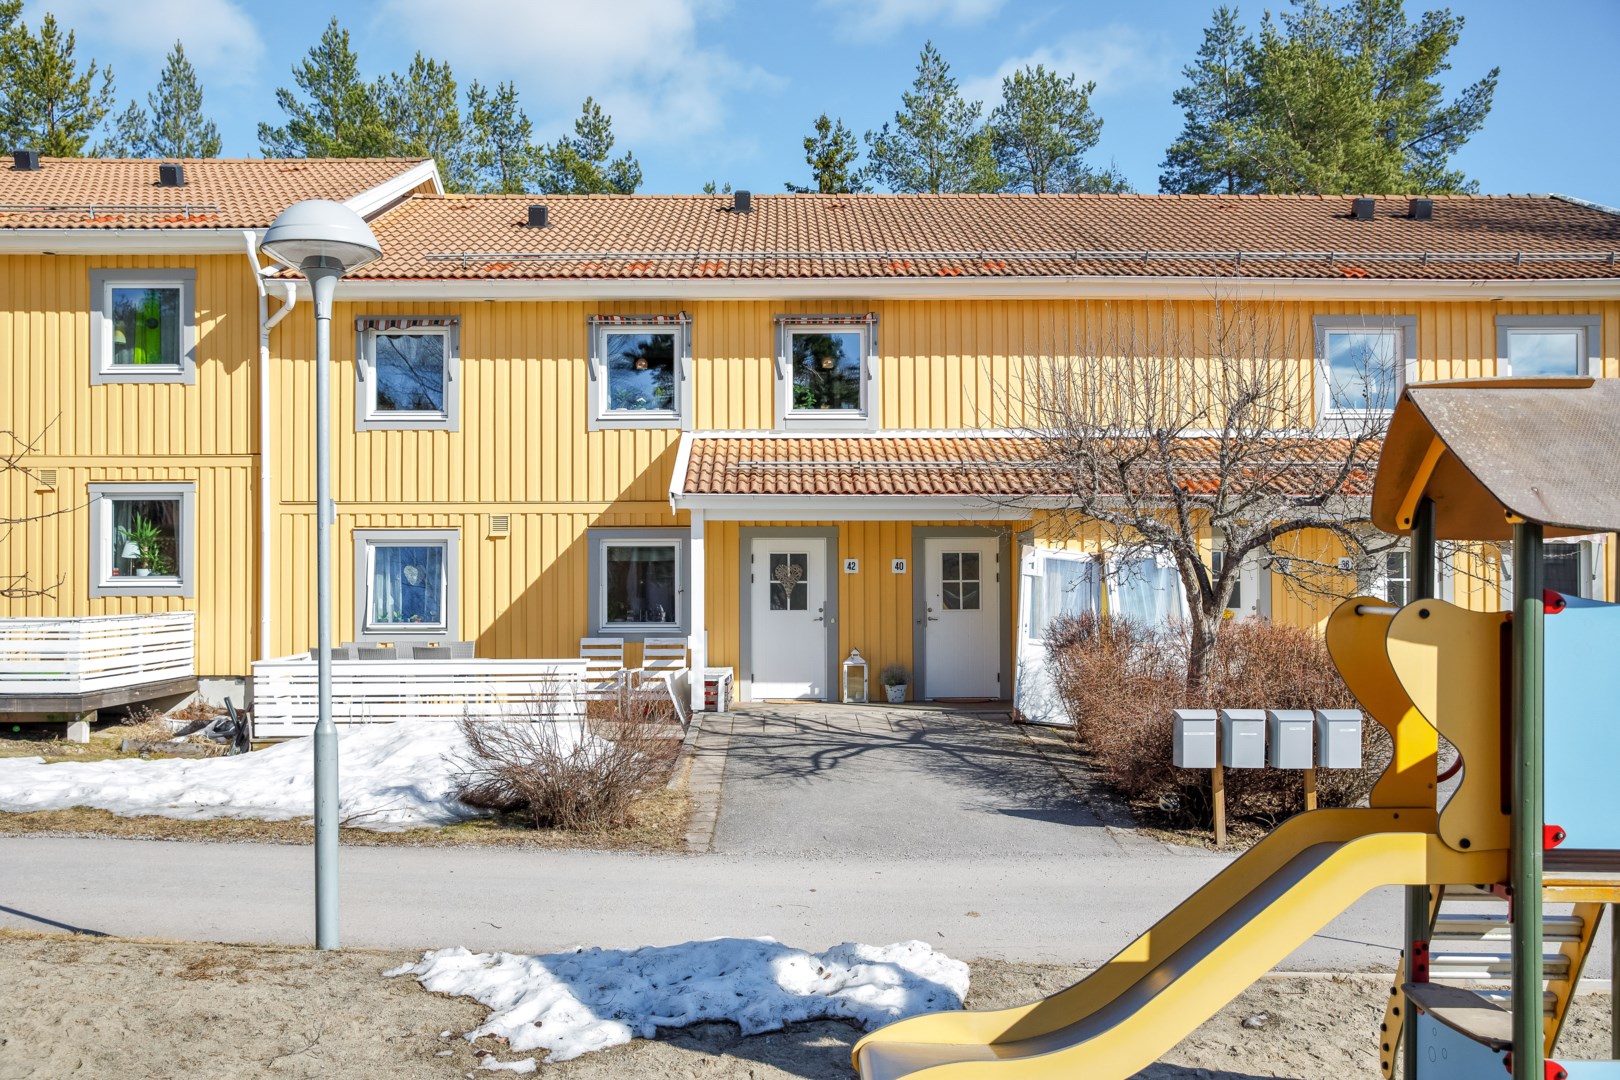 Bostadsrätt i Granloholm, Sundsvall, Sverige, Strömstadsvägen 42